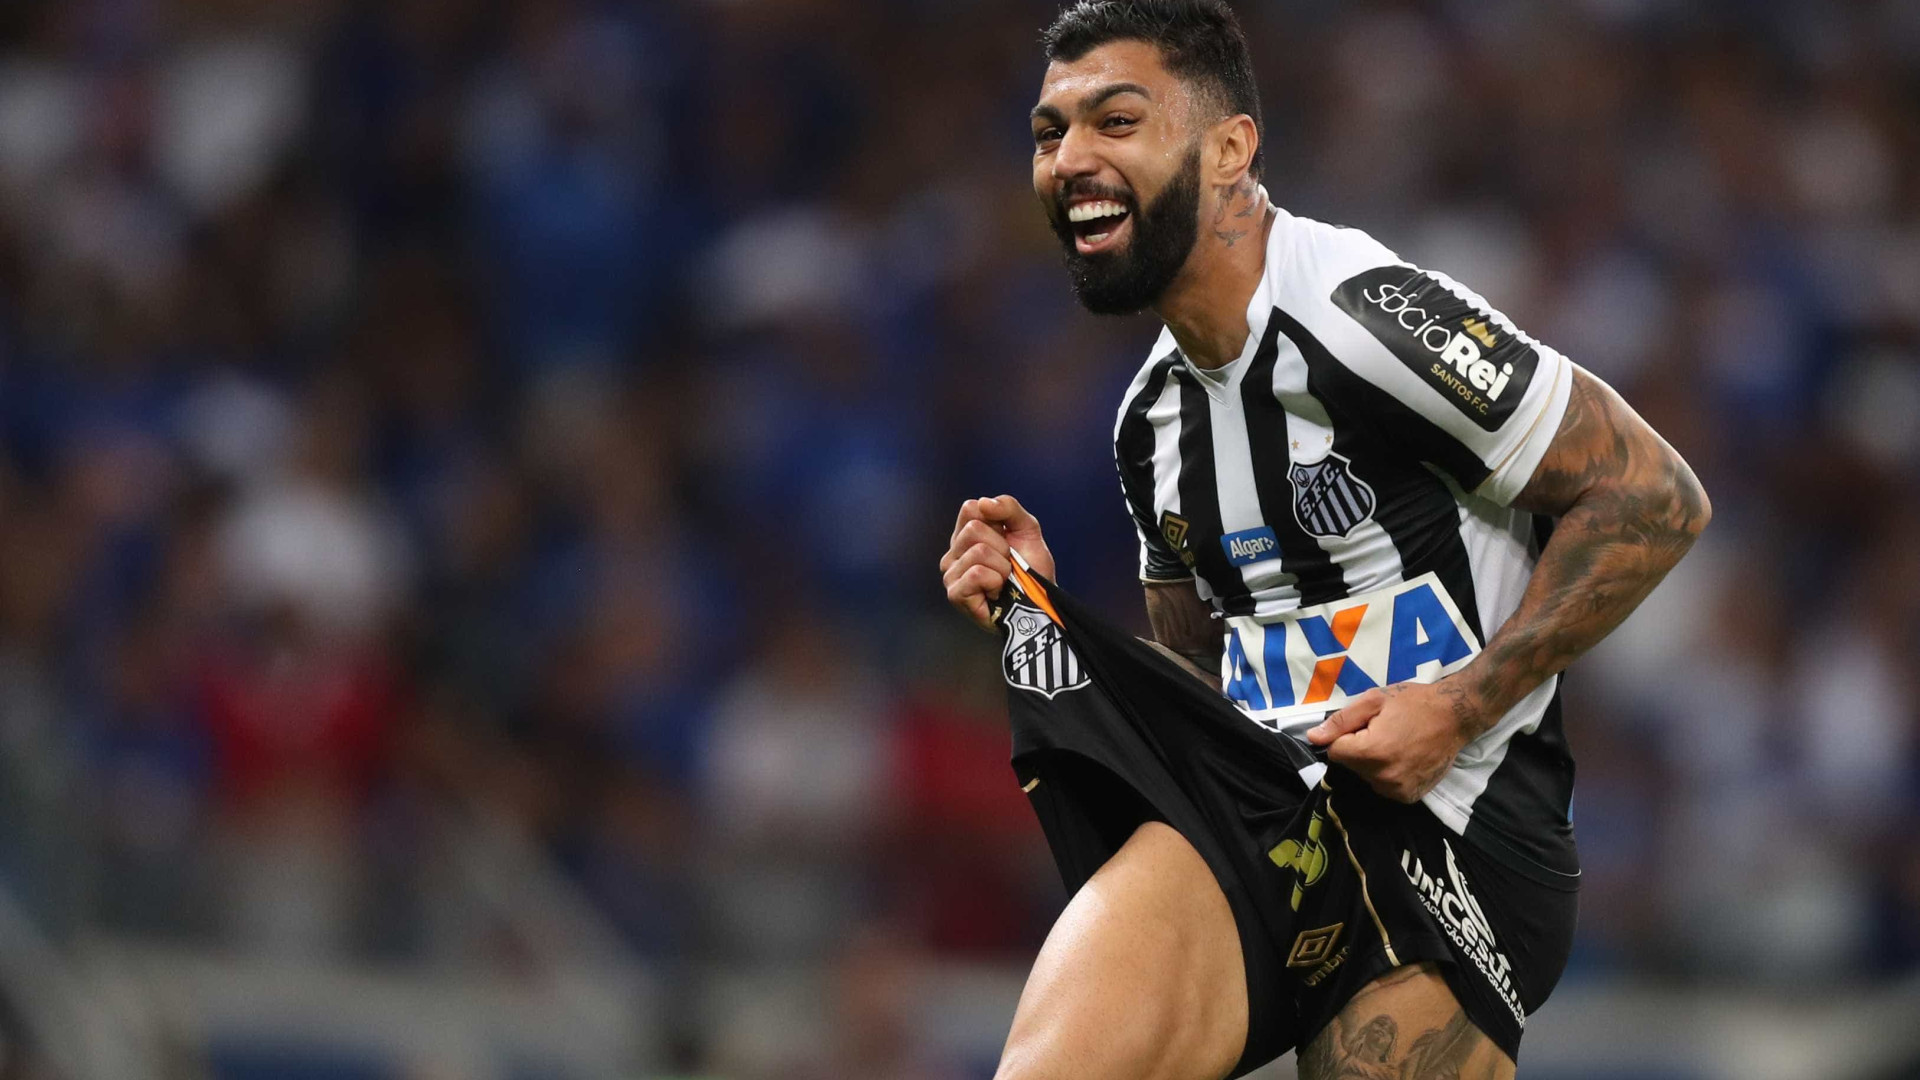 â€˜Tenho vontade de jogar no Flamengoâ€™, diz Gabigol